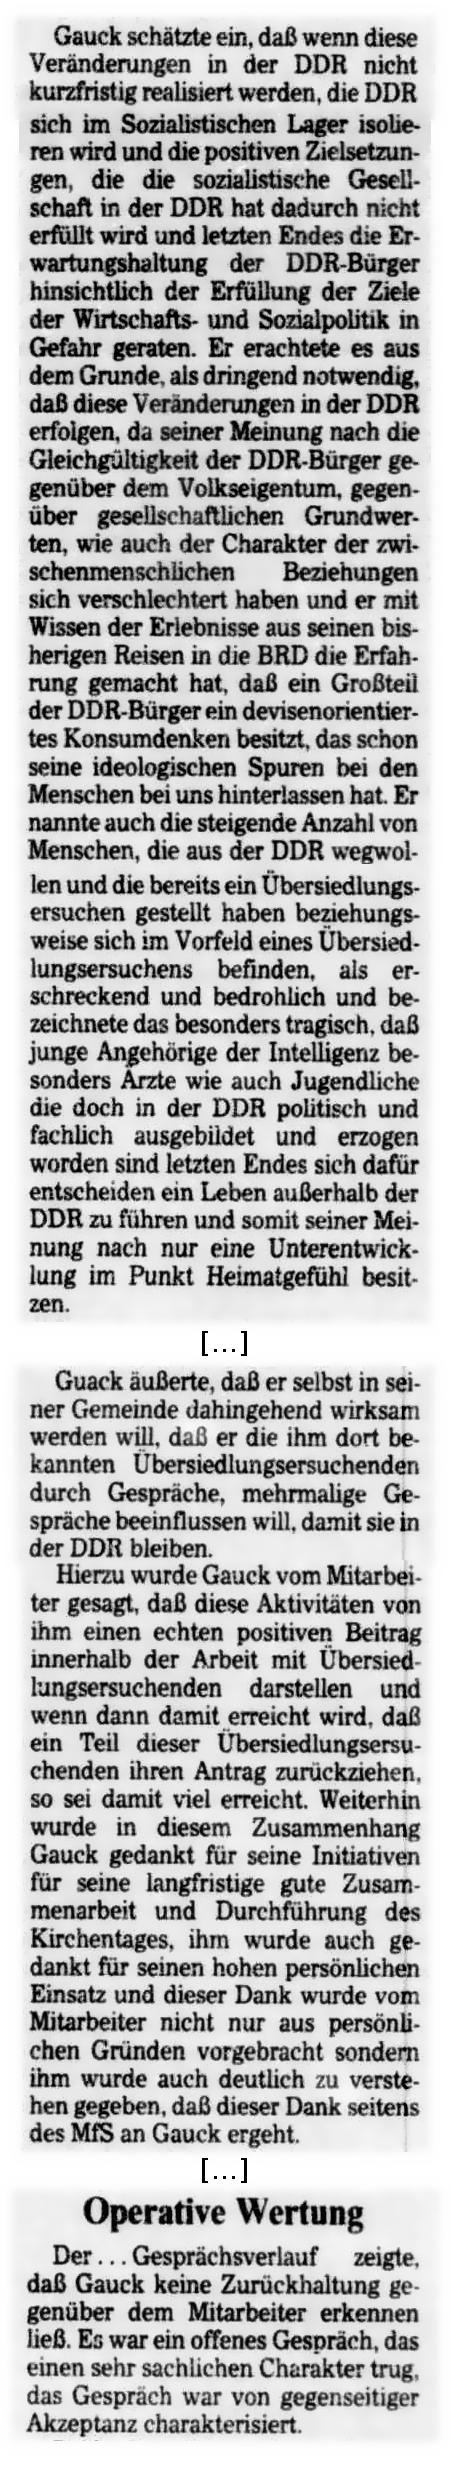 Gauck schätzte ein, daß wenn diese Veränderungen in der DDR nicht kurzfristig realisiert weren, die DDR sich im Sozialistischen Lager isolieren wird und die positiven Zielsetzungen, die die sozialistische Gesellschaft in der DDR hat dadurch nicht erfüllt wird und letzten Endes die Erwartungshaltung der DDR-Bürger hinsichtlich der Erfüllung der Ziele der Wirtschafts- und Sozialpolitik in Gefahr geraten. Er erachtete es aus dem Grunde, als dringend notwendig, daß diese Veränderungen in der DDR erfolgen, da seiner Meinung nach die Gleichgültigkeit der DDR-Bürger gegenüber dem Volkseigentum, gegenüber gesellschaftlichen Grundwerten, wie auch der Chrakter der zwischenmenschlichen Beziehungen sich verschlechtert haben und er mit Wissen der Erlebnisse aus seinen bisherigen Reisen in die BRD die Erfahrung gemacht hat, daß ein Großteil der DDR-Bürger ein devisenorientiertes Konsumdenken besitzt, das schon seine ideologischen Spuren bei den Menschen bei uns hinterlassen hat. Er nannte auch die steigende Anzahl von Menschen, die aus der DDR wegwollen und die bereits ein Übersiedlungsersuchen gestellt haben beziehungsweise sich im Vorfeld eines Übersiedlungsersuchens befinden, als erschreckend und bedrohlich und bezeichnetet das besonders tragisch, daß junge Angehörige der Intelligenz besonders Ärzte wie auch Jugendliche die doch in der DDR politisch und fachlich ausgebildet und erzogen worden sind letzten Endes sich dafür entscheiden ein Leben außerhalb der DDR zu führen und somit seiner Meinung nach nur eine Unterentwicklung im Punkt Heimatgefühl besitzen ... Gauck äußerte, daß er selbst in seiner Gemeinde dahingehend wirksam werden will, daß er die imh dort bekannten Übersiedlungsersuchen durch Gespräche, mehrmalige Gespräche beeinflussen will, damit sie in der DDR bleiben. Hierzu wurde Gauck vom Mitarbeiter gesagt, daß diese Aktivitäten ihm einen echten postiven Beitrag innerhalb der Arbeit mit Übersiedlungsersuchenden darstellen und wenn dann damit erreicht wird, daß ein Teil dieser Übersiedlungsersuchenden ihren Antrag zurückziehen, so sei damit viel erreicht. Weiterhin wurde in diesem Zusammenhang Gauck gedankt für seine Initiativen für seine langfristige gute Zusammenarbeit und Durchführung des Kirchentages, ihm wurde auch gedankt für seinen hohen persönlichen Einsatz und dieser Dank wurde vom Mitarbeiter nicht nur aus persönlichen Gründen vorgebracht sondern ihm wurde auch deutlich zu verstehen gegeben, daß dieser Dank seitens des MfS an Gauck ergeht. ... Operative Wertung - Der... Gesprächsverlauf zeigte, daß Gauck keine Zurückhaltung gegenüber dem Mitarbeiter erkennen ließ. Es war ein offenes Gespräch, das einen sehr sachlichen Charakter trug, das Gespräch war von gegenseitiger Akzeptanz charakterisiert.